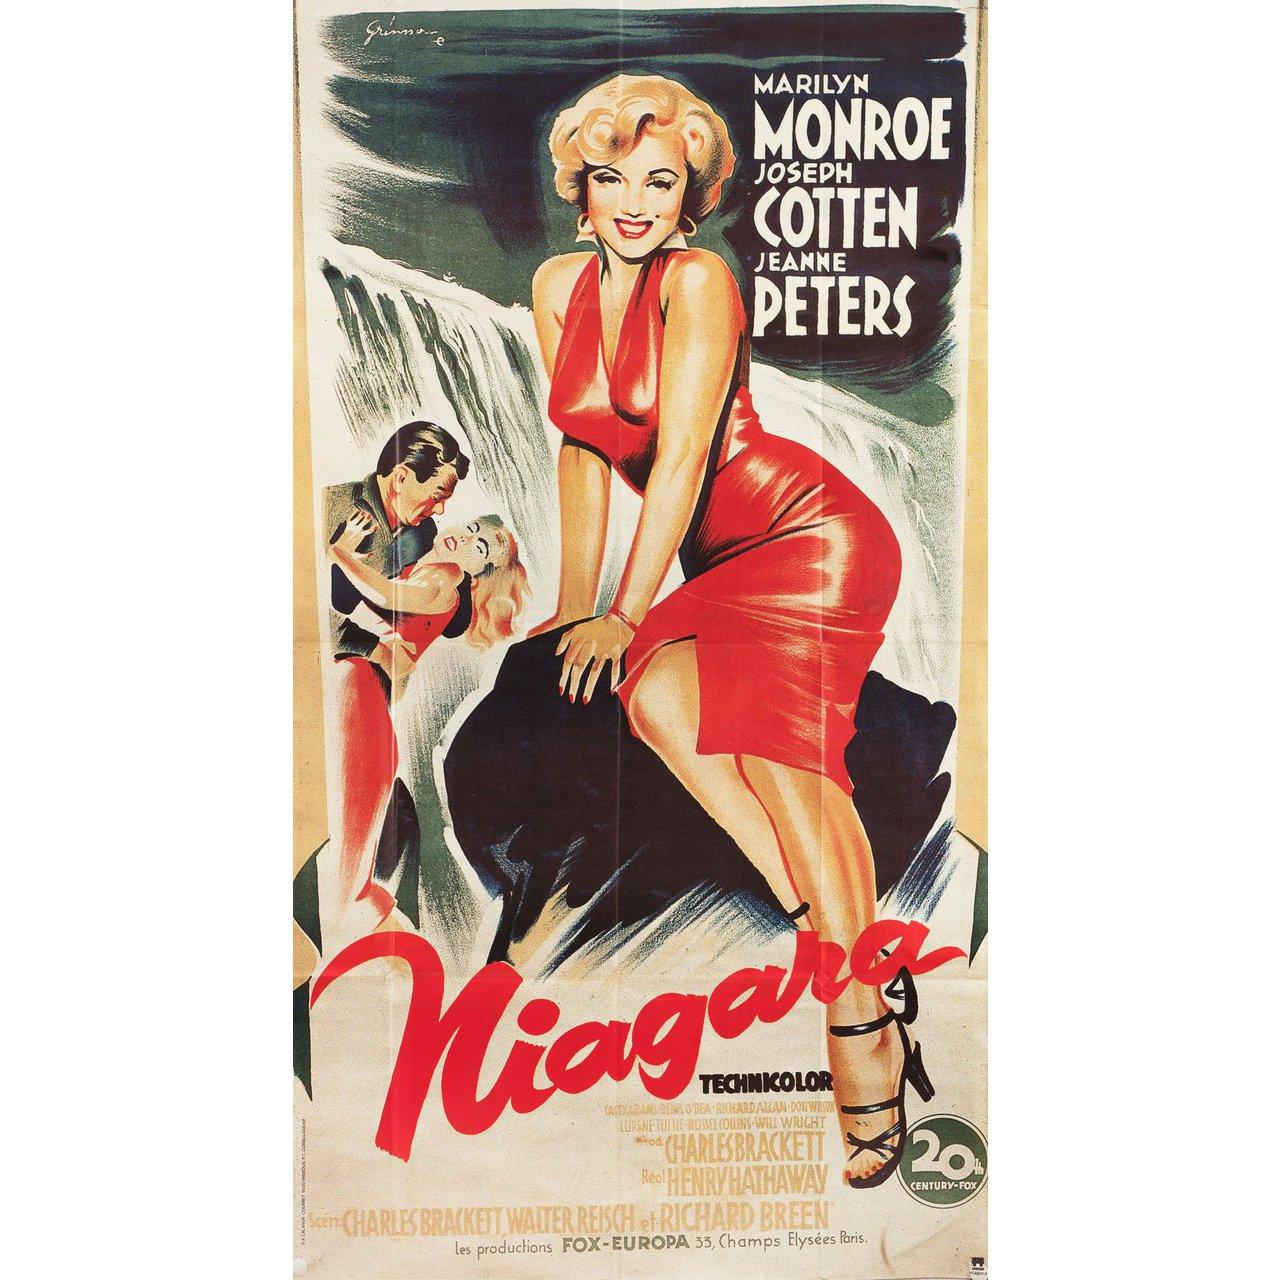 Réédition originale des années 1980 de l'affiche pantalon française de Boris Grinsson pour le film Niagara réalisé par Henry Hathaway en 1953 avec Marilyn Monroe / Joseph Cotten / Jean Peters / Max Showalter. Très bon état, plié. De nombreuses